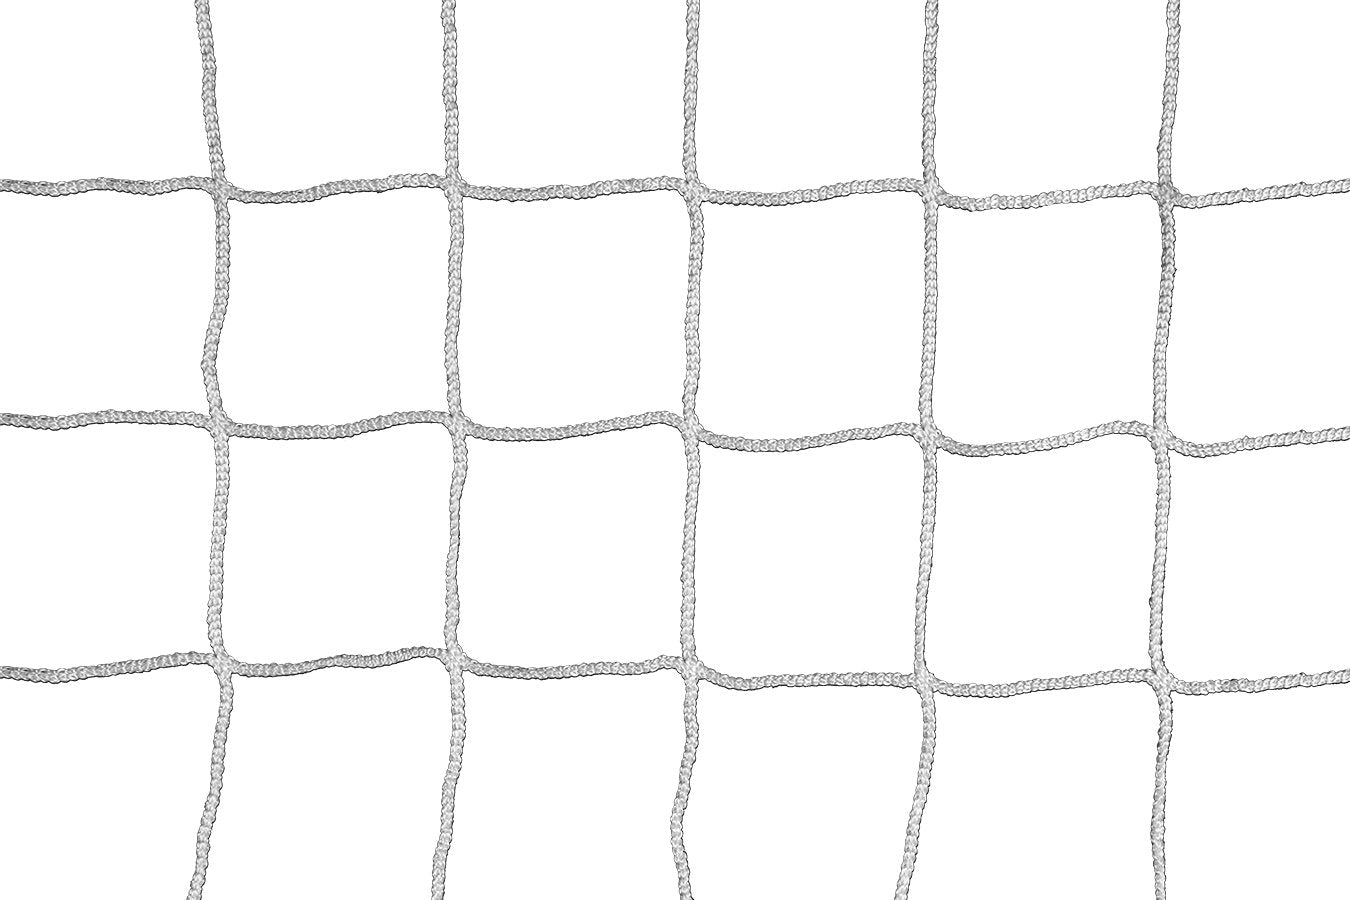 Kwikgoal 3mm Braided Knotless Net | 3B6824 Nets Kwikgoal White 